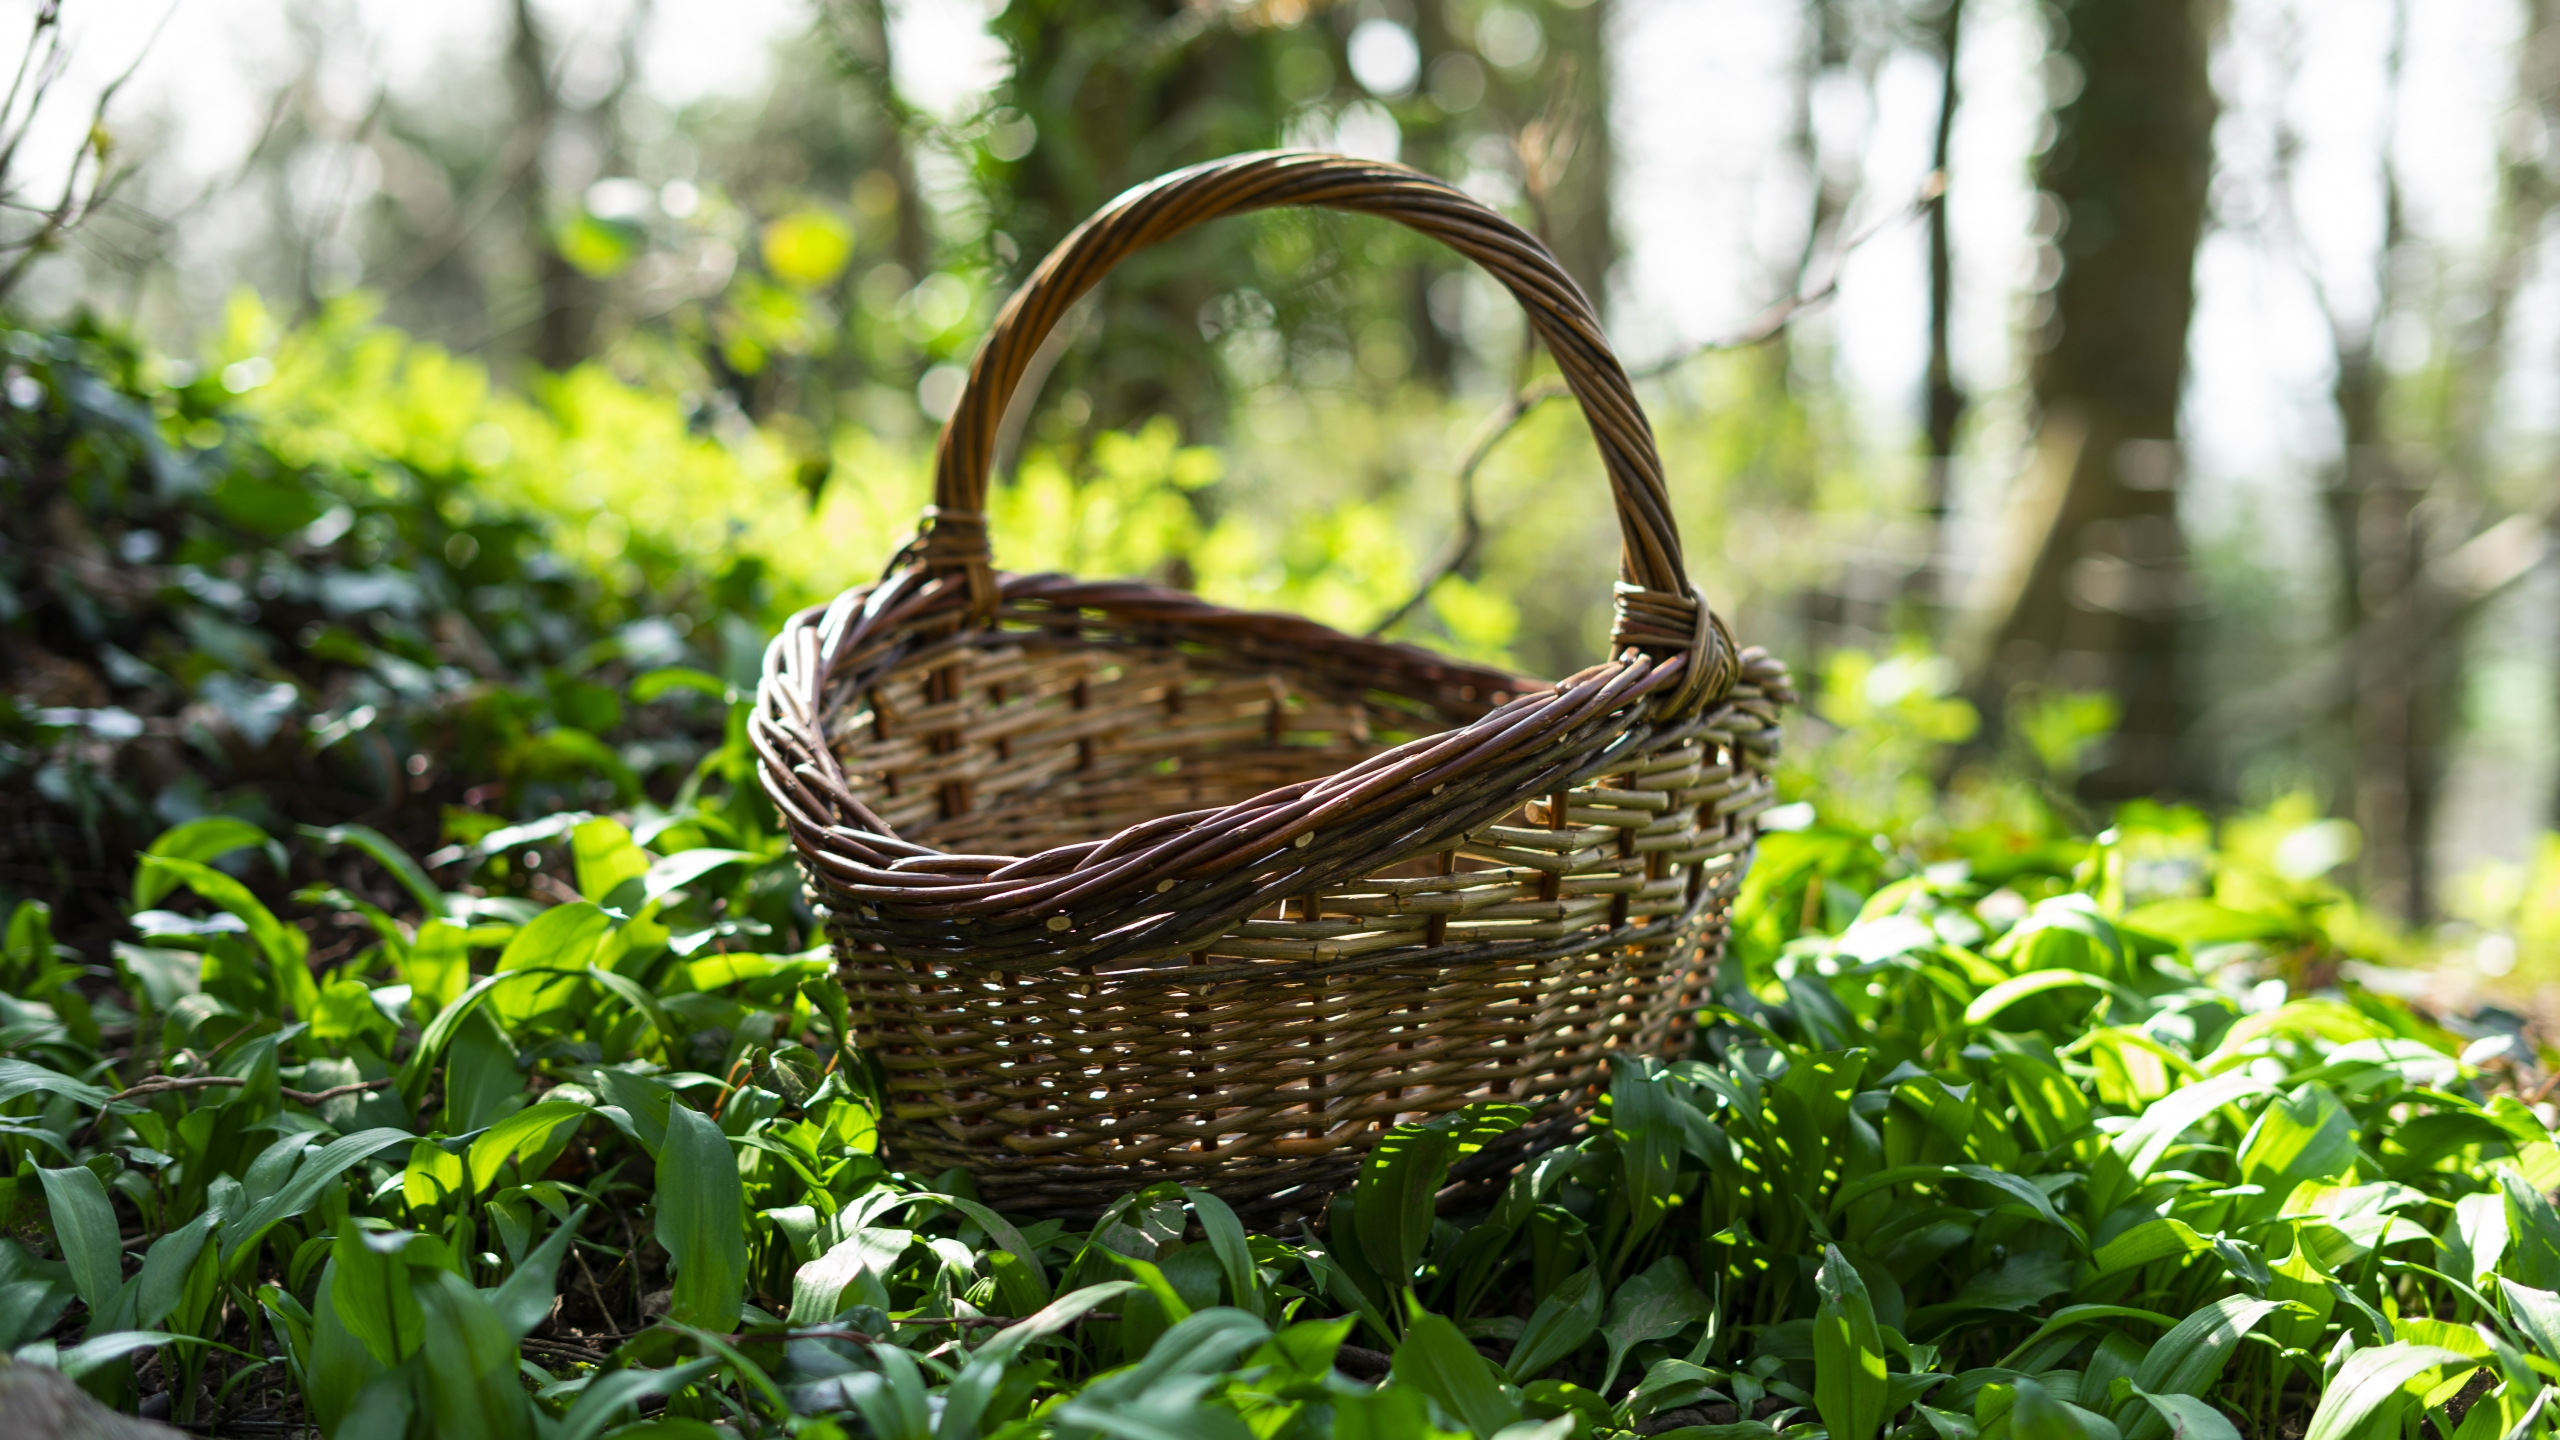 Large Willow Basket